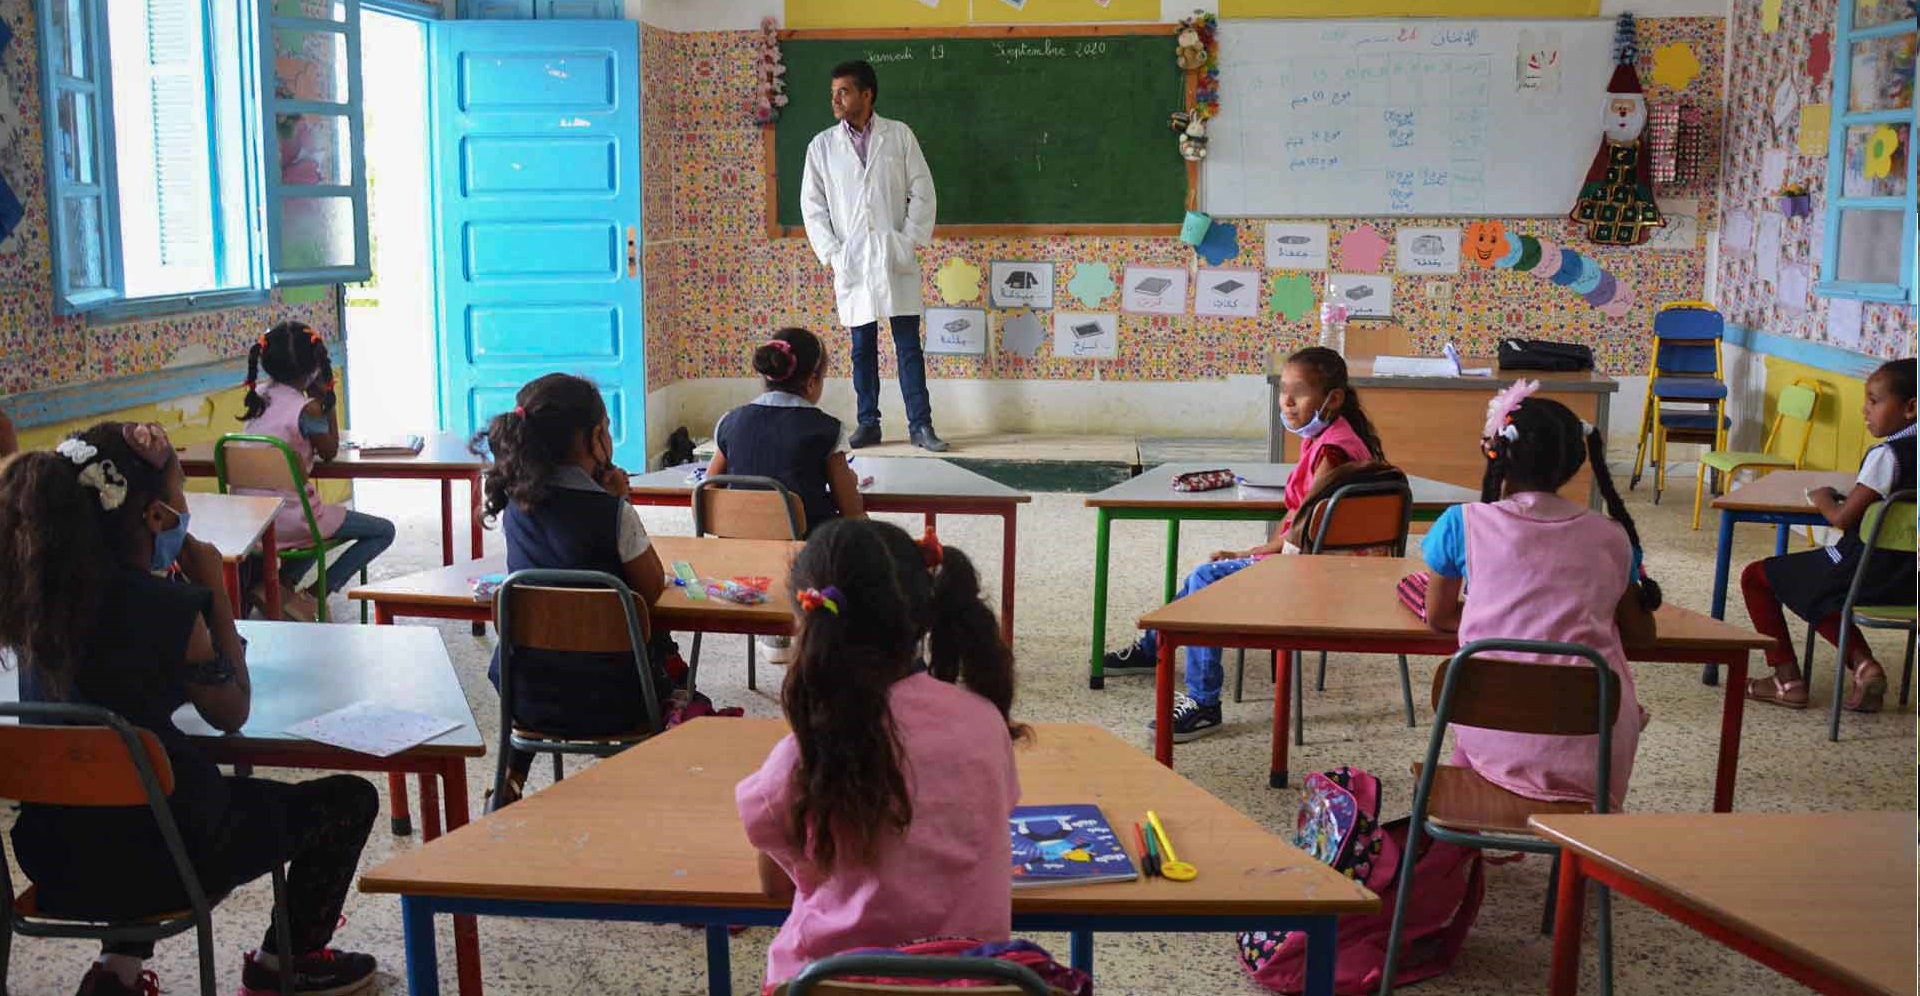 Tunisie – La Manouba : Démission collective de tous les directeurs d’écoles primaires